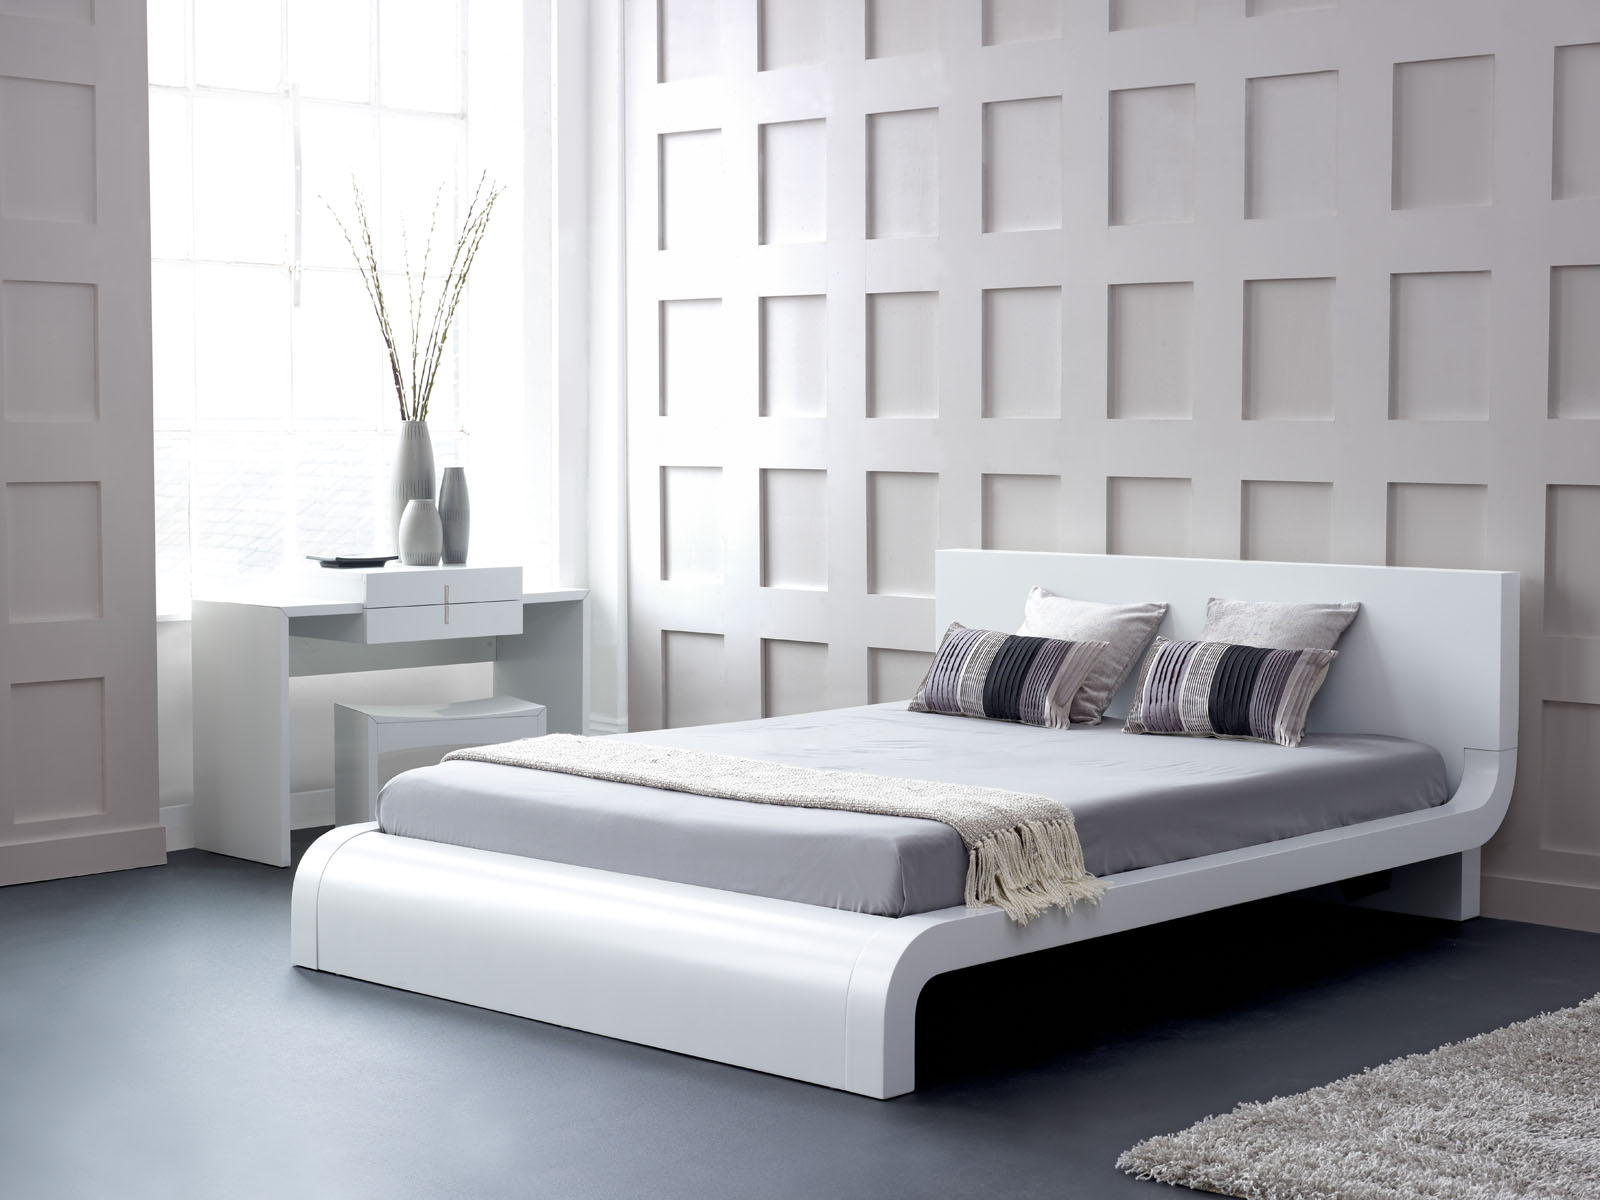 Λευκό κρεβάτι σε φουτουριστικό ύφος